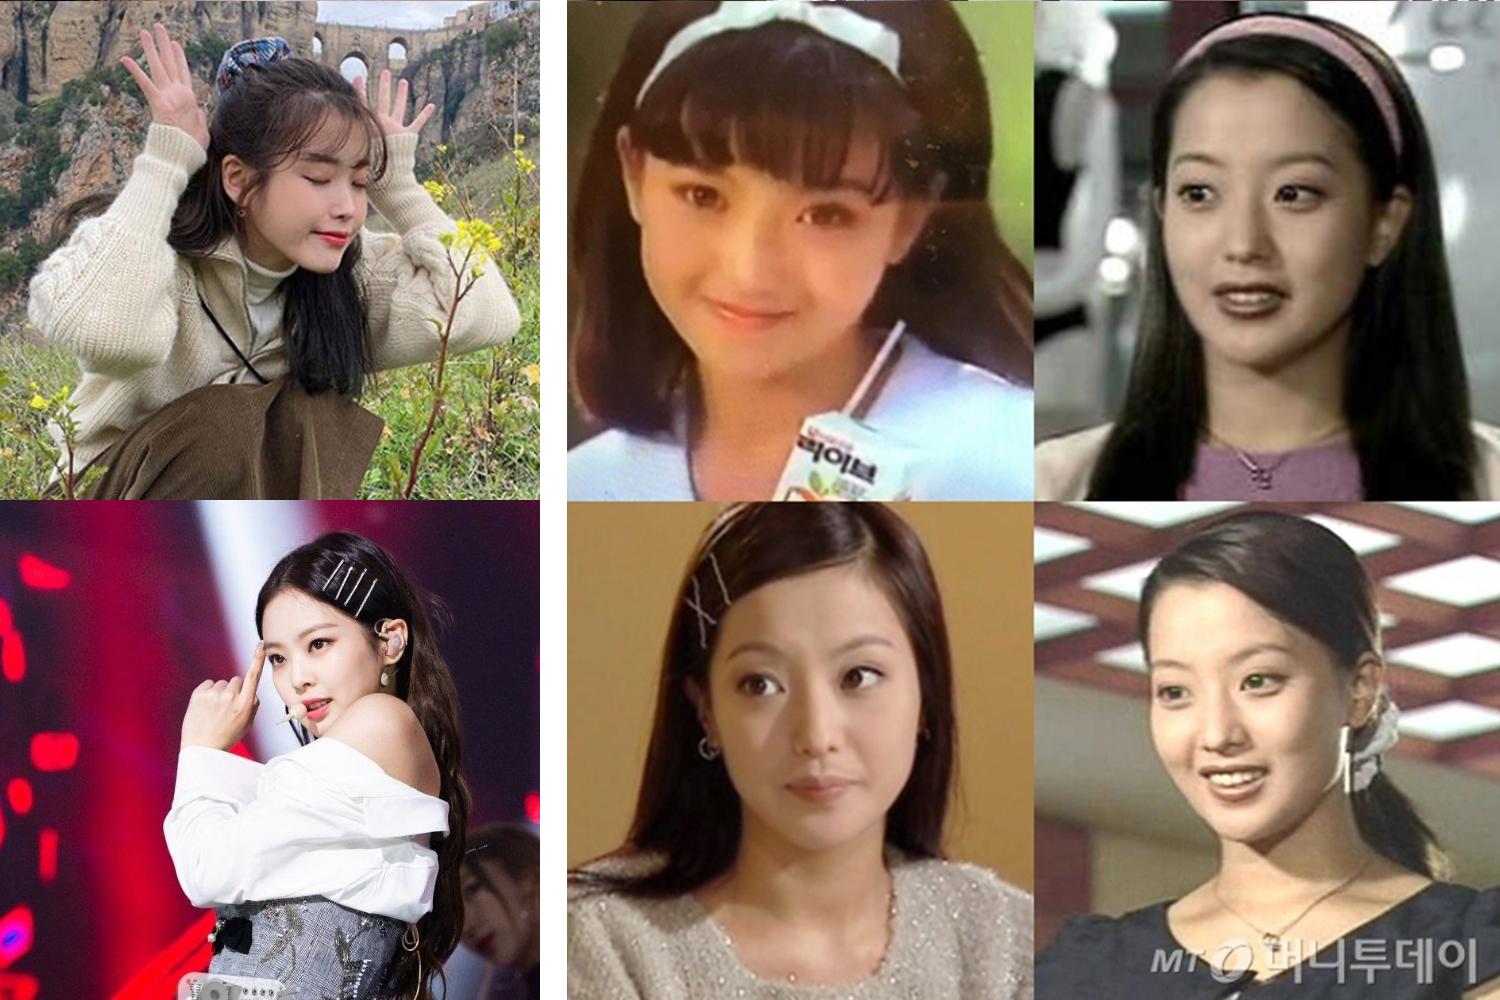 những người nổi tiếng Hàn Quốc IU và jennie đeo phụ kiện tóc như scrunchies và kẹp tóc, bên cạnh hình ảnh Kim heesun đeo băng đô, scrunchies và kẹp tóc